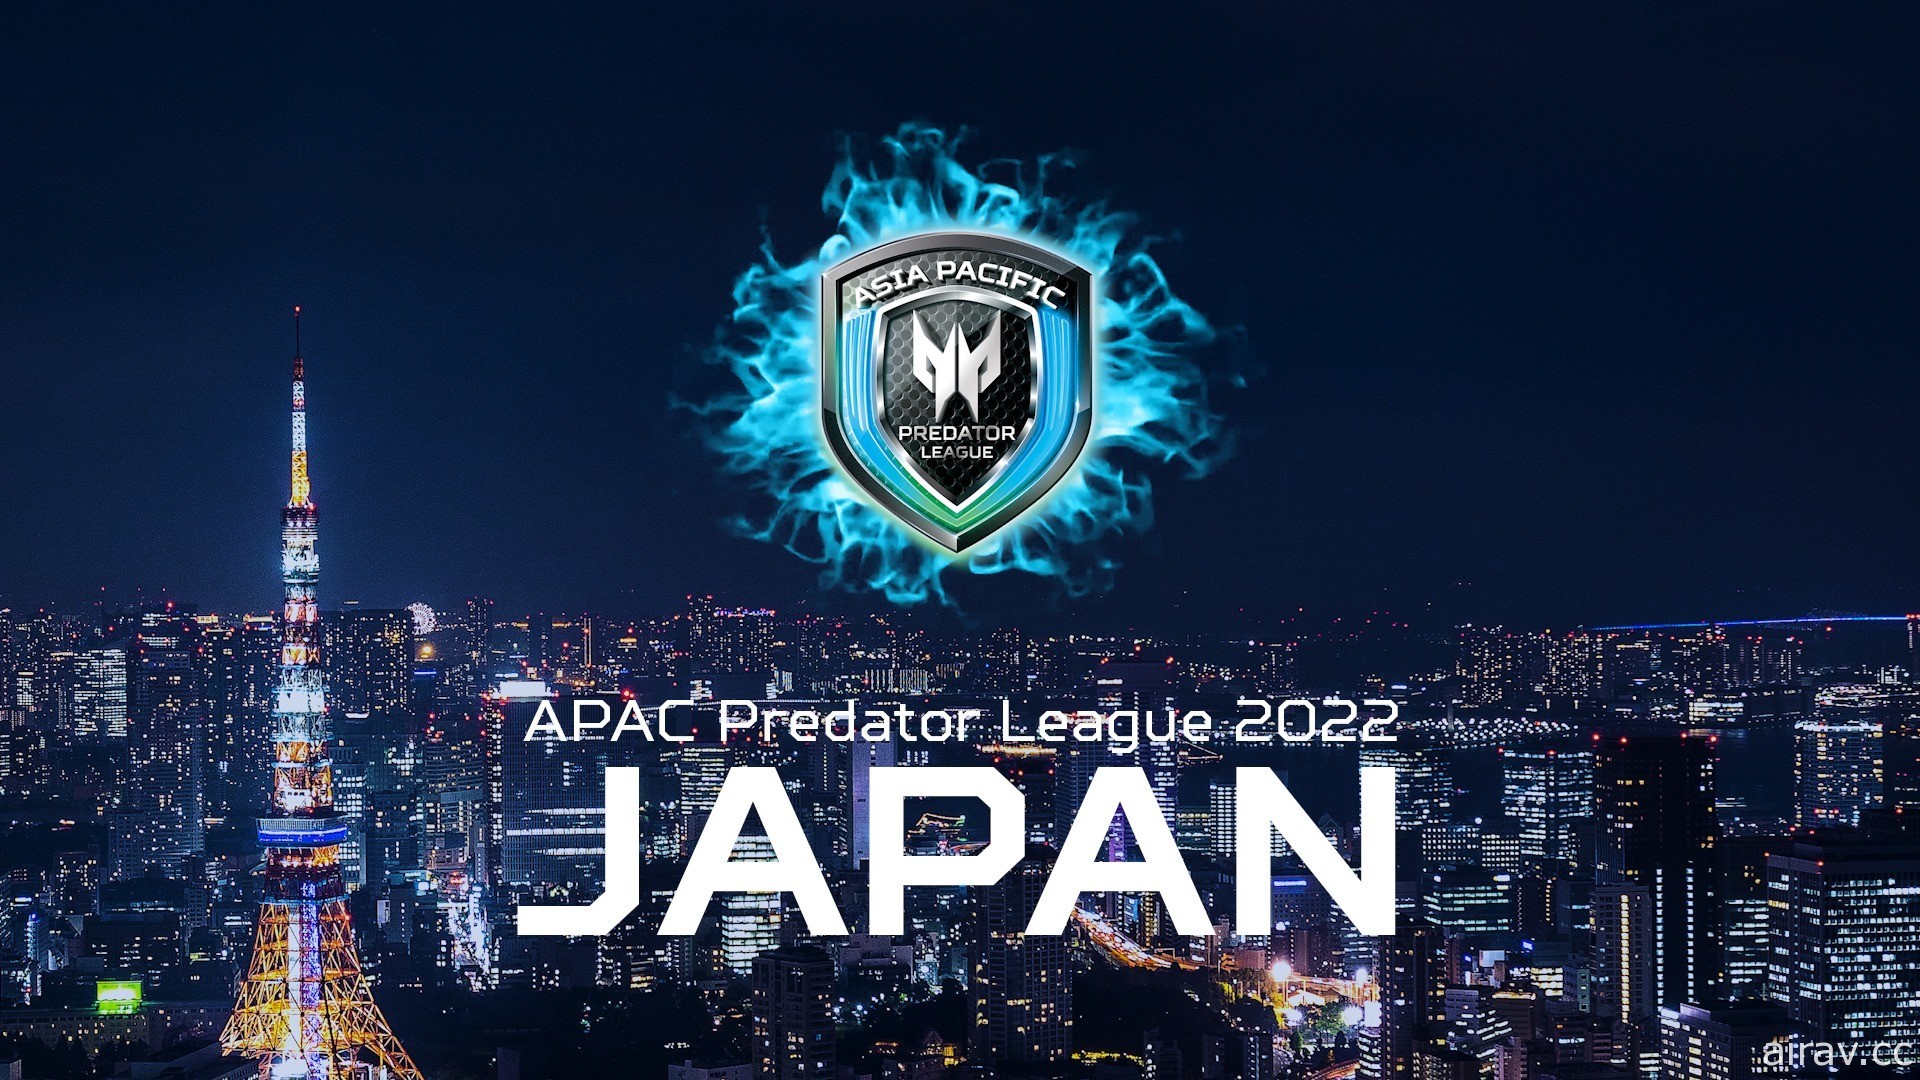 宏碁 2020/21 亞太區 Predator League 電競總決賽落幕 下屆移師日本